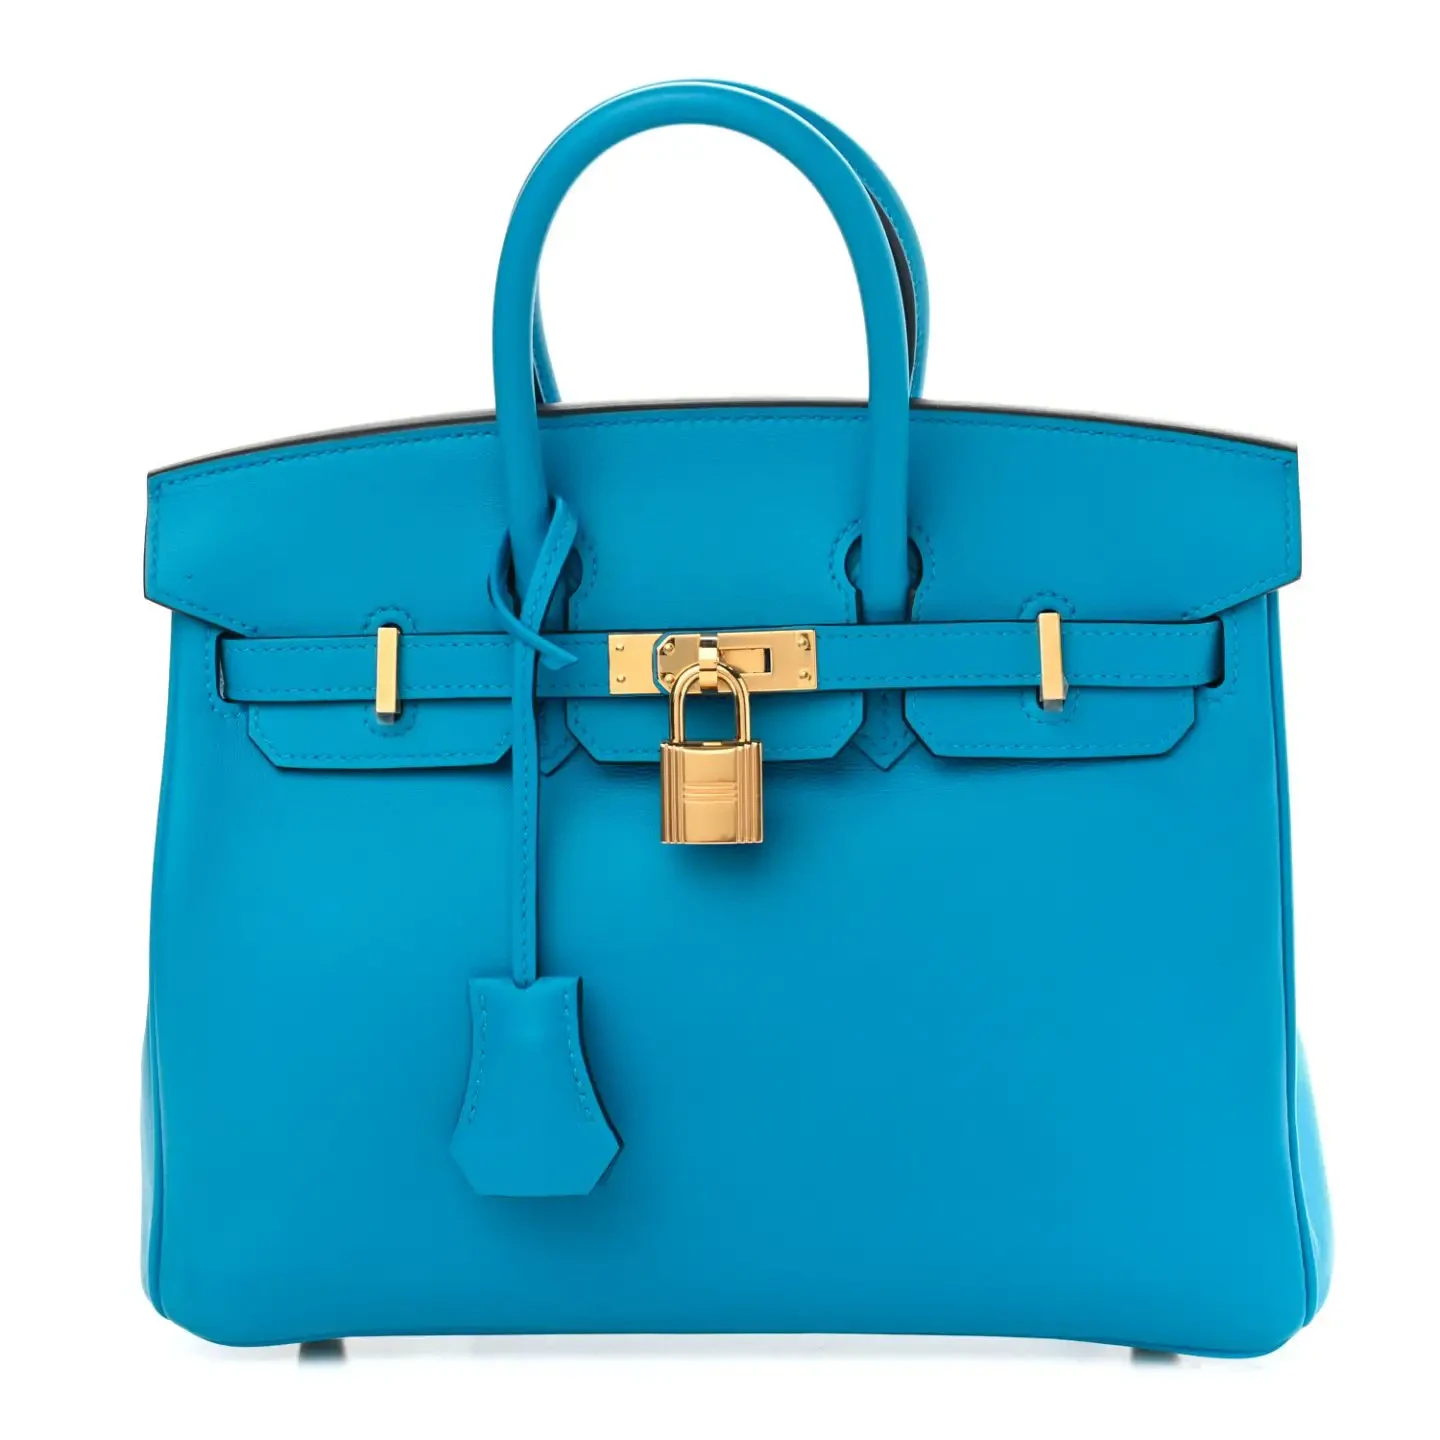 Sac Hermès Swift Birkin bleu